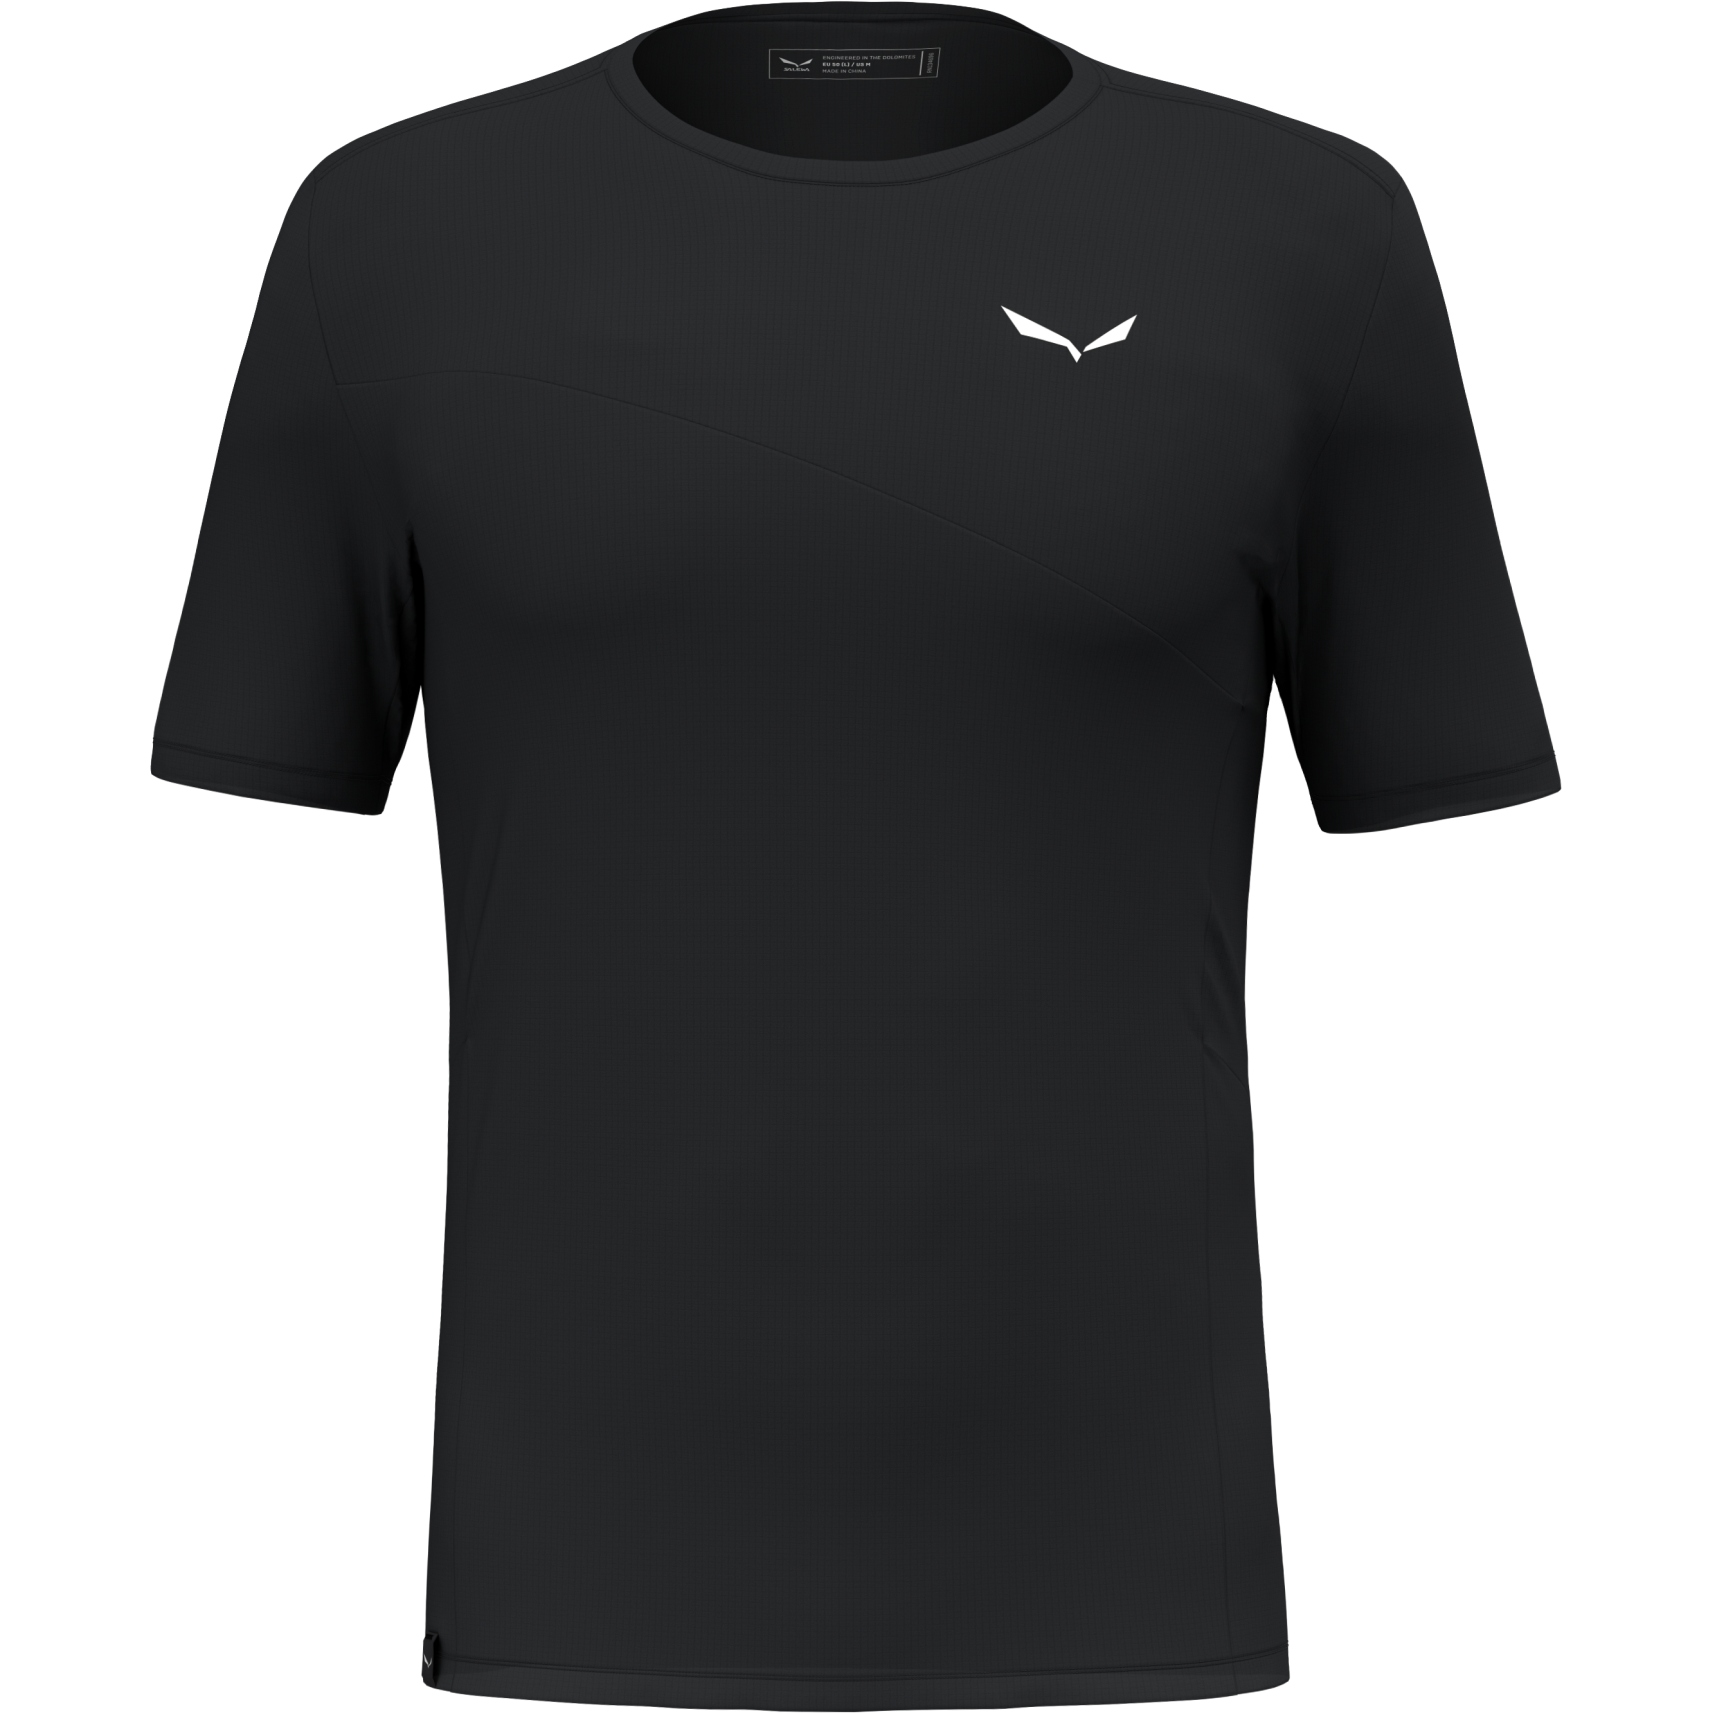 Produktbild von Salewa Puez Sporty Dry T-Shirt Herren - black out 0910